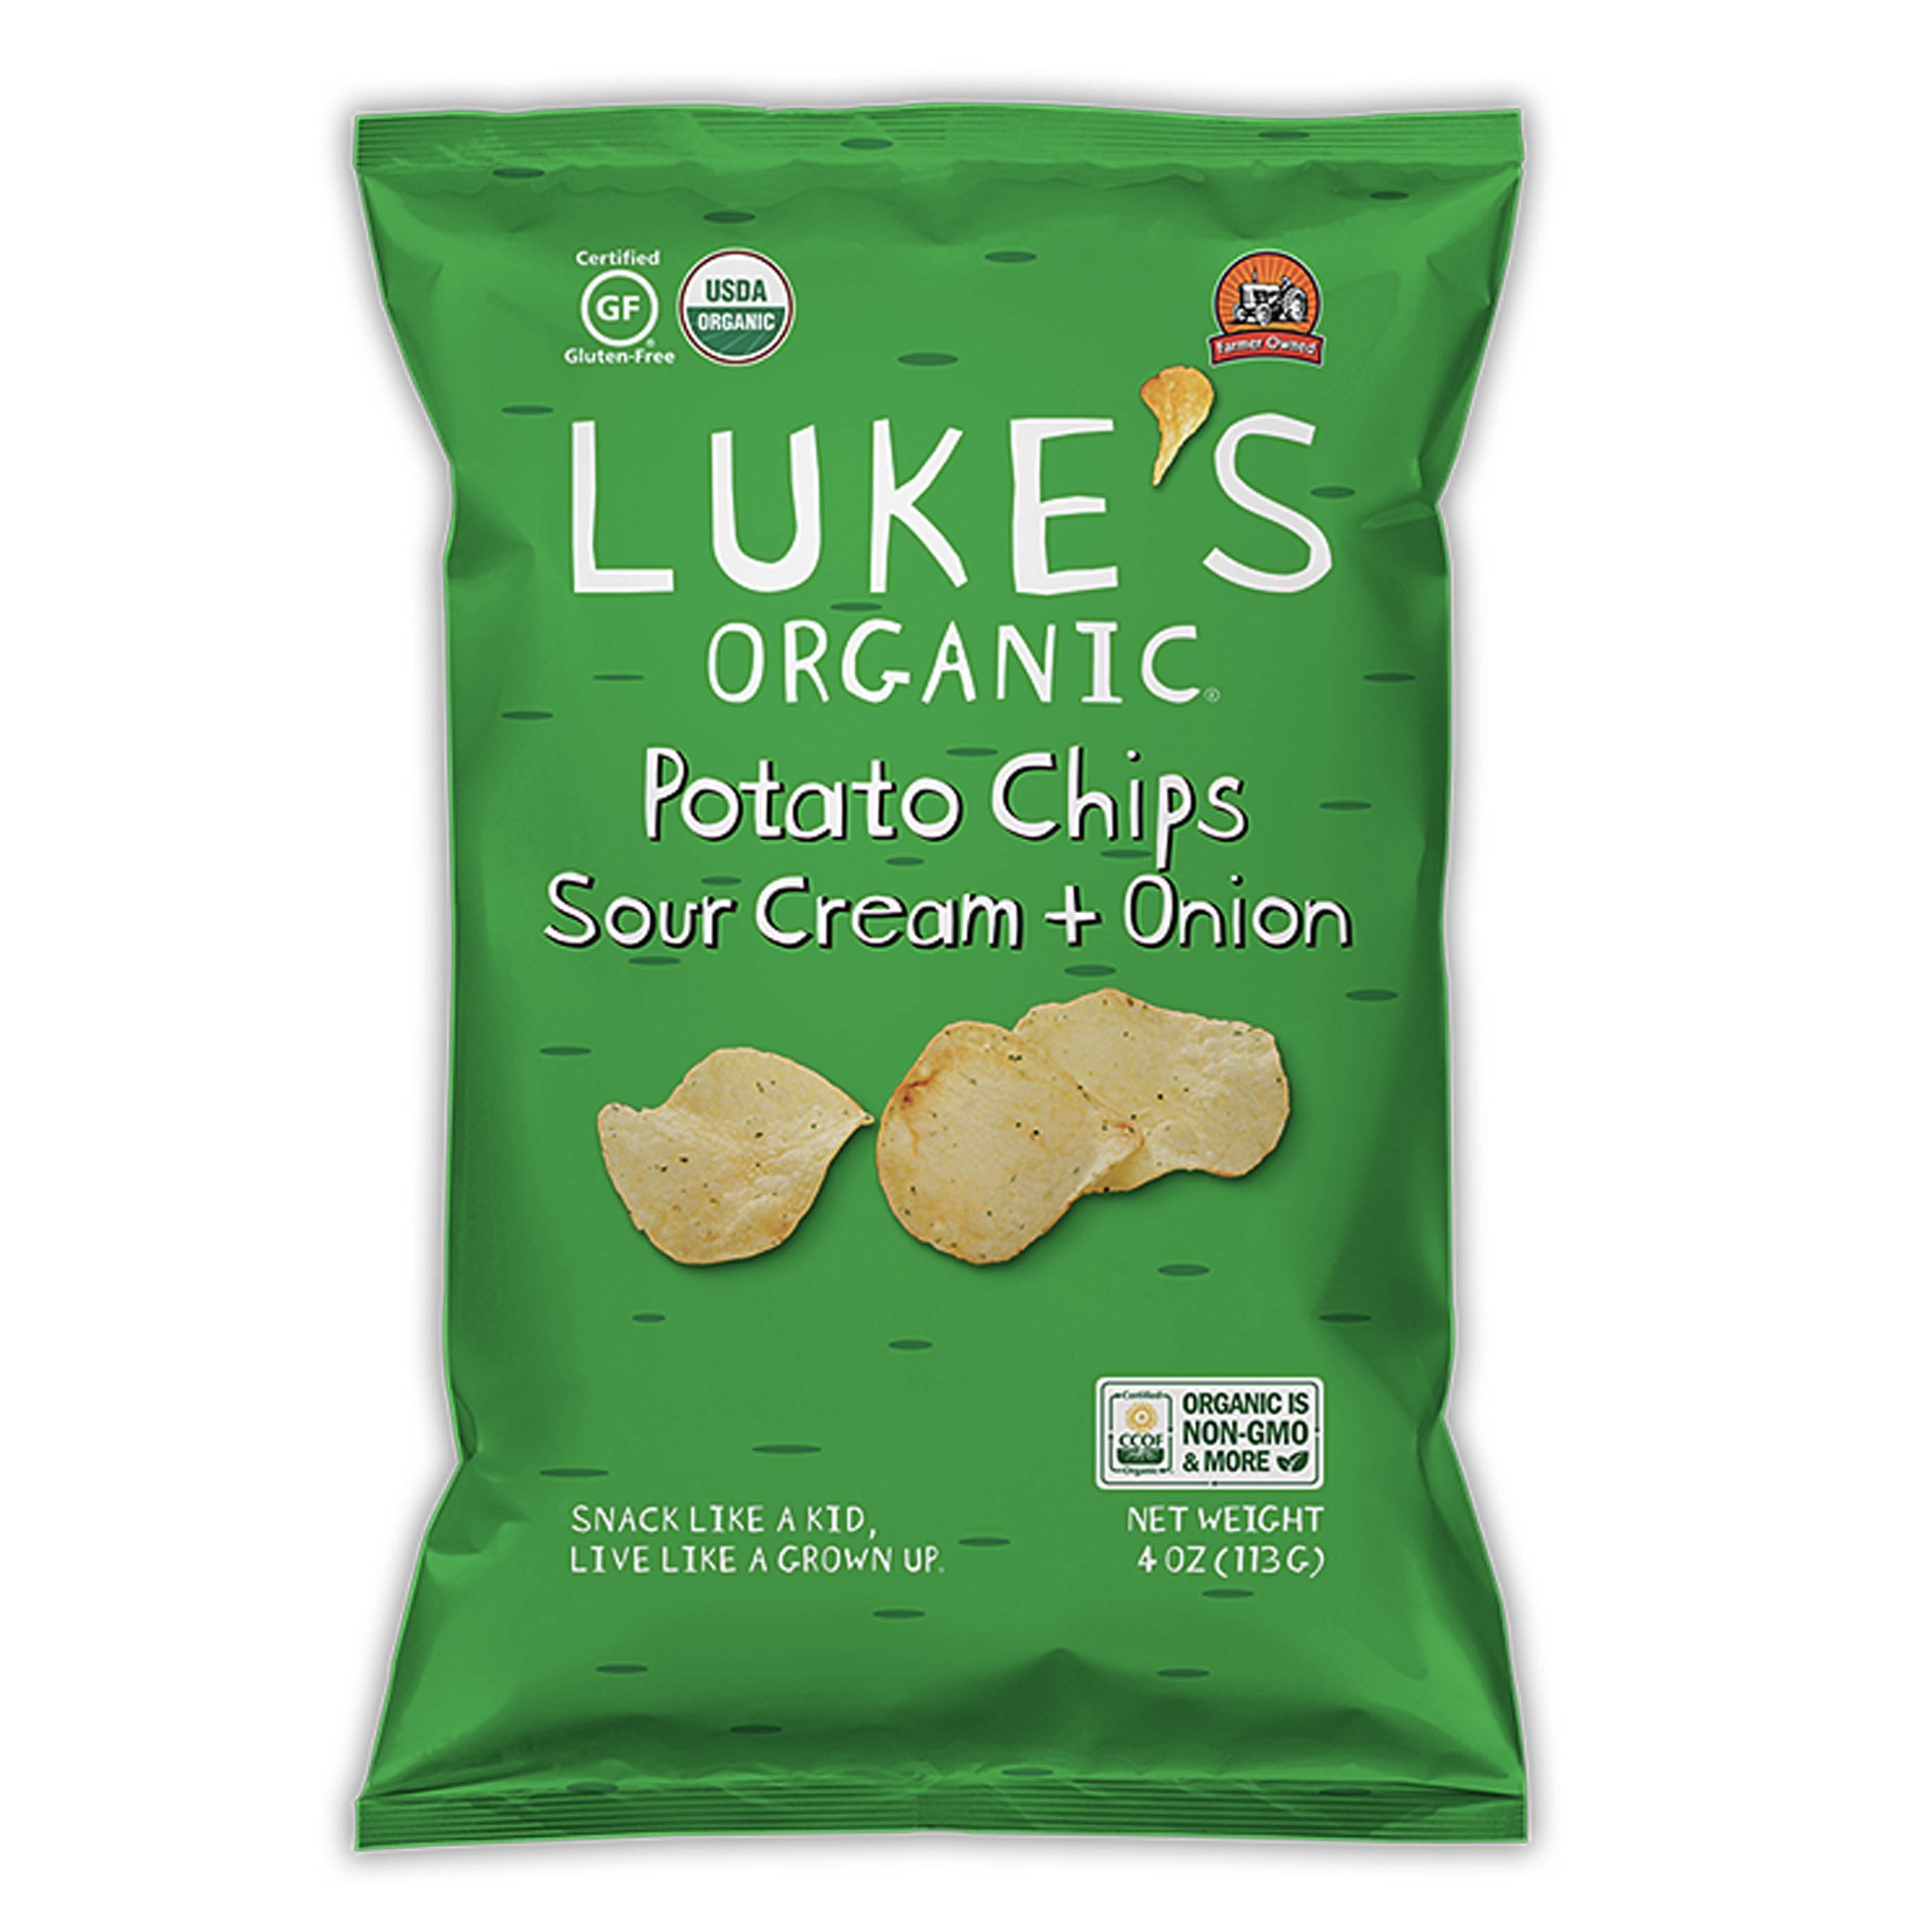 美國有機酸奶油洋蔥薯片 "LUKE'S ORGANIC" Sour Cream + Onion Potato Chips